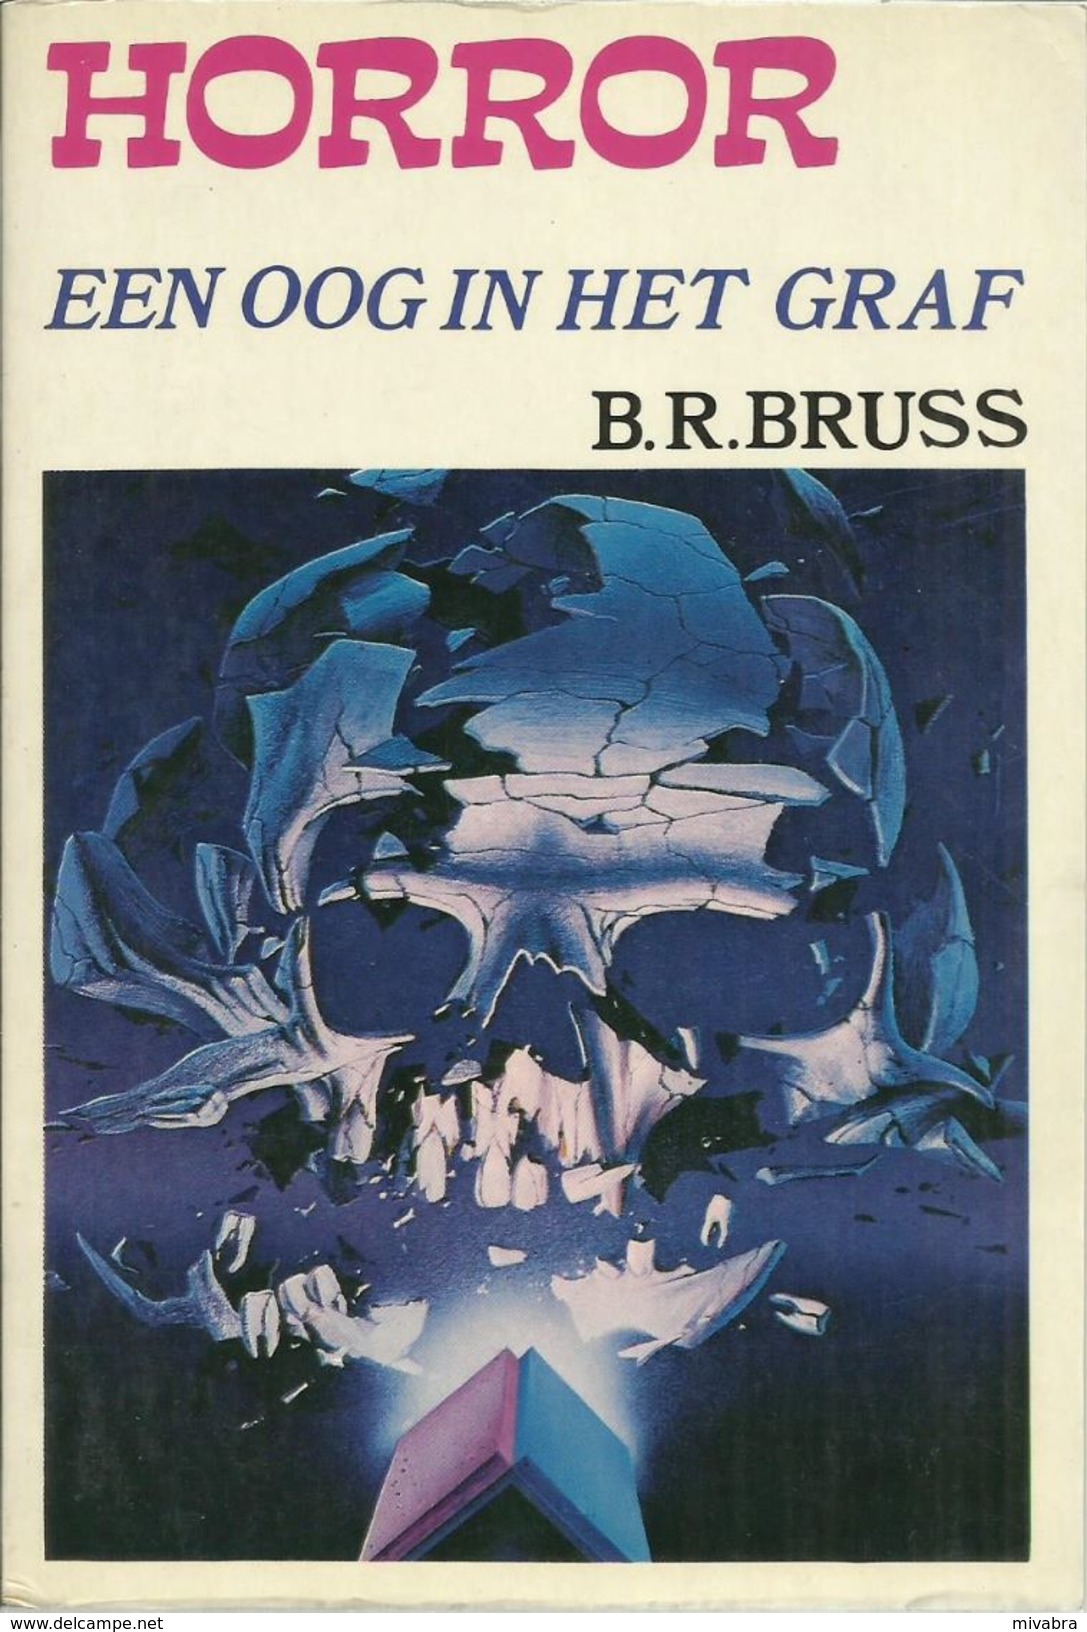 HORROR - EEN OOG IN HET GRAF - B. R. BRUSS - 1975 Uitgeverij DE SCHORPIOEN - Horrors & Thrillers